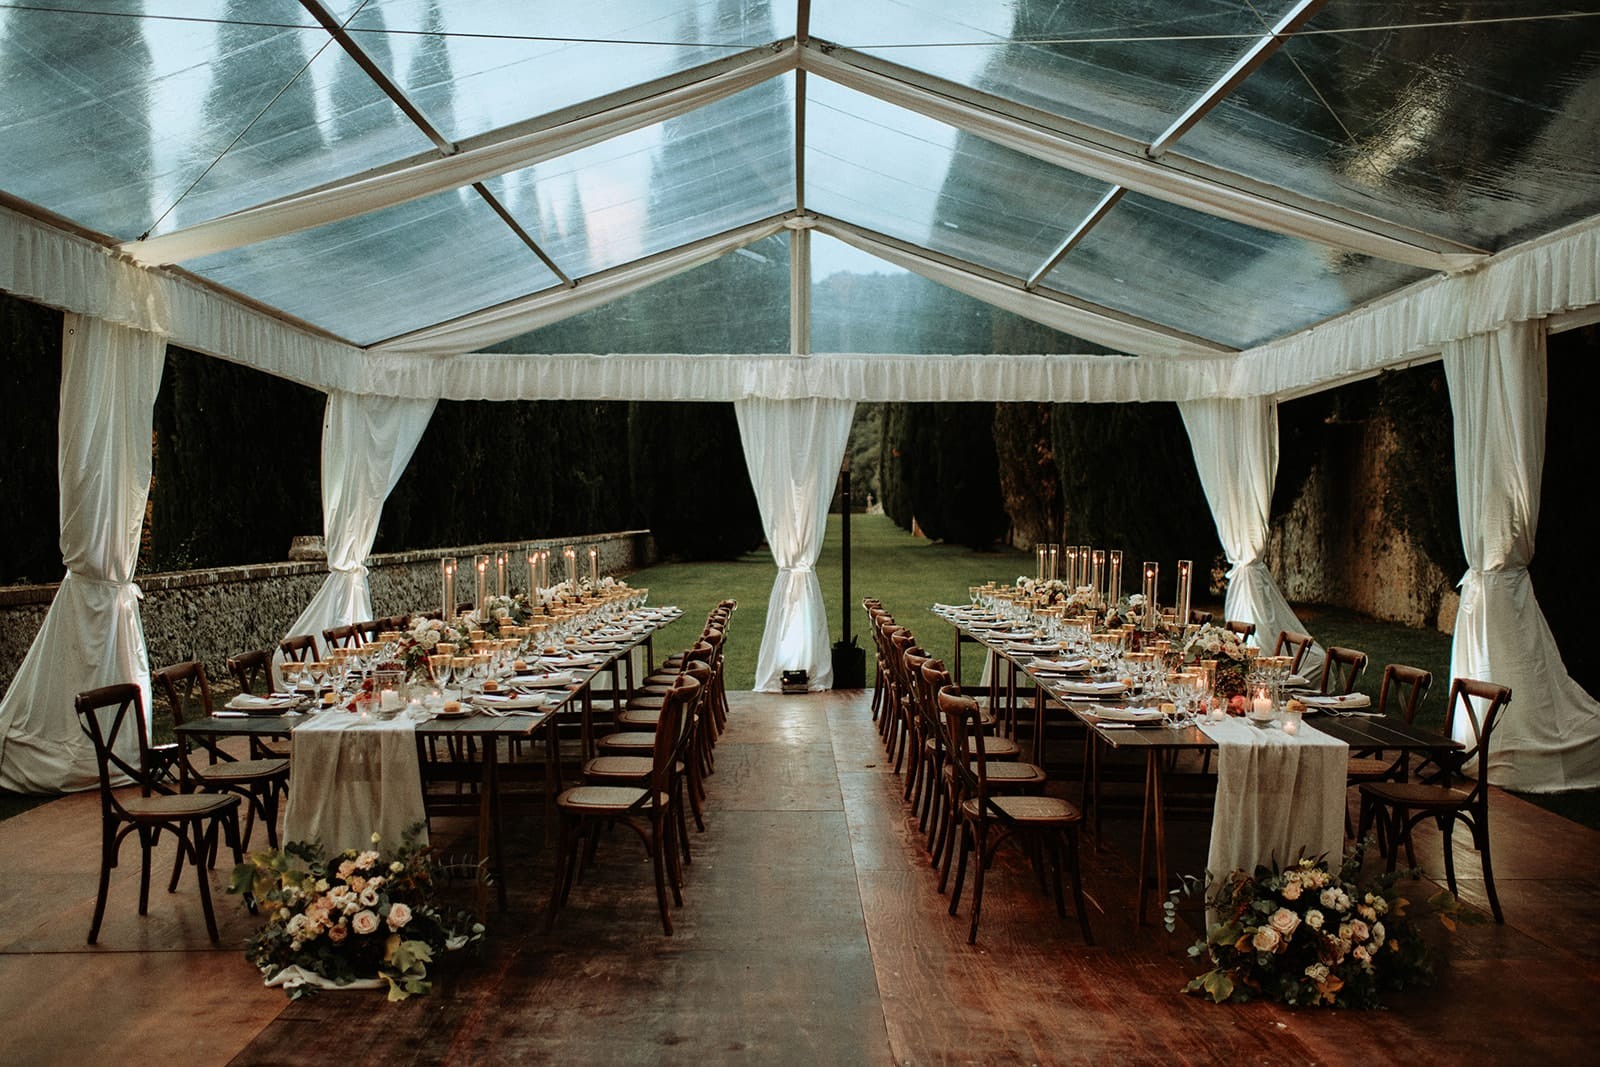 Villa Cetinale Wedding Reception - Wedding Reception at Villa Cetinale in Siena, Tuscany